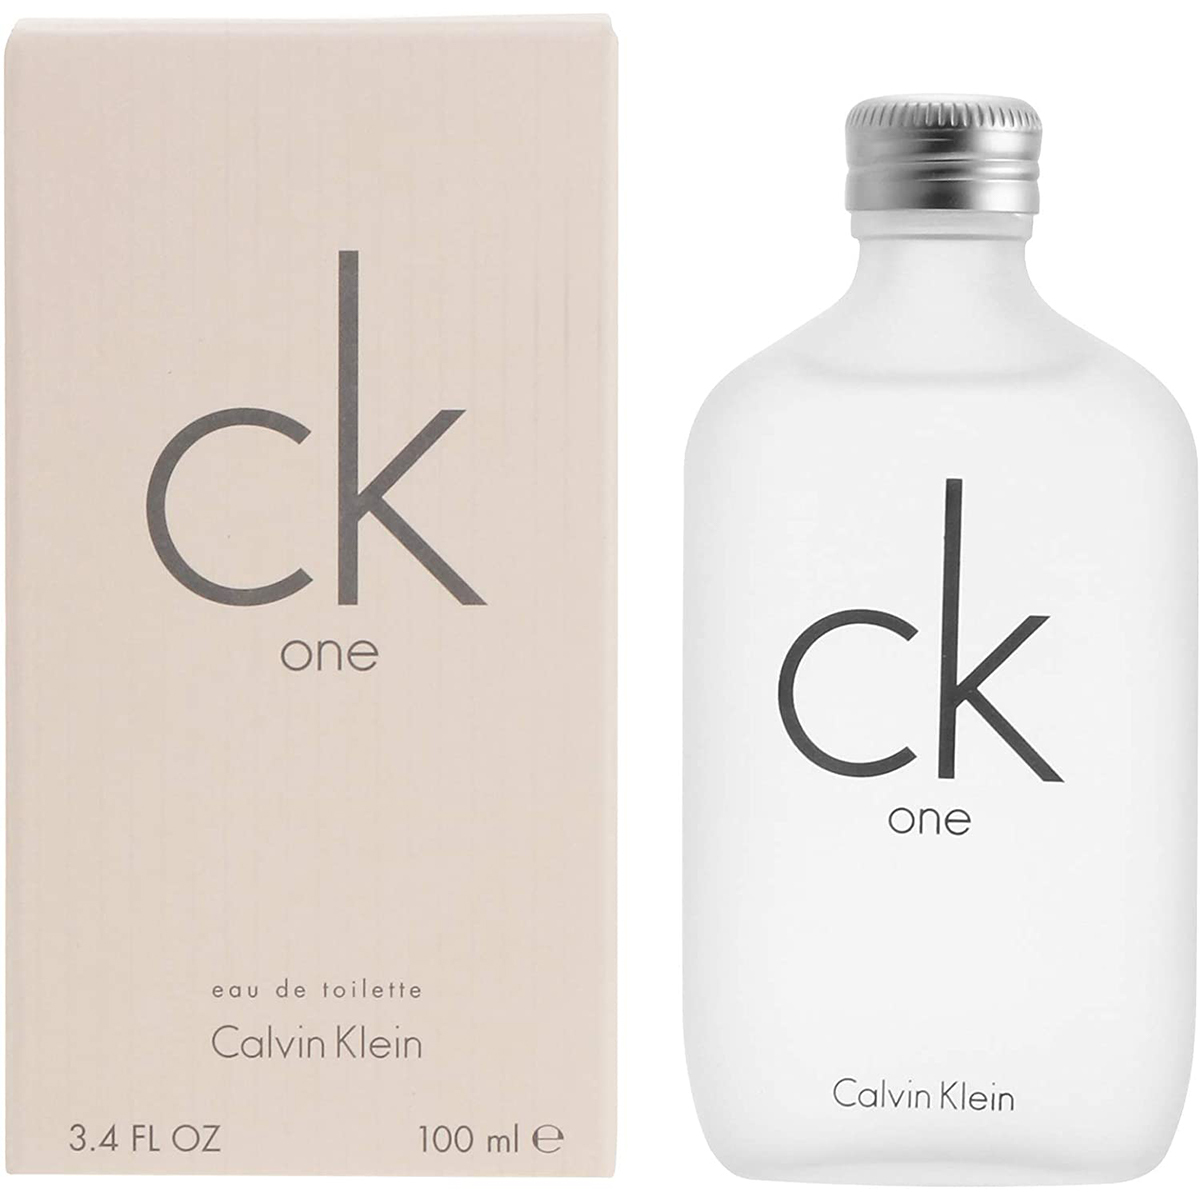 Calvin Klein カルバンクライン シーケー ワン オードトワレ 100ml ユニセックス香水の商品画像